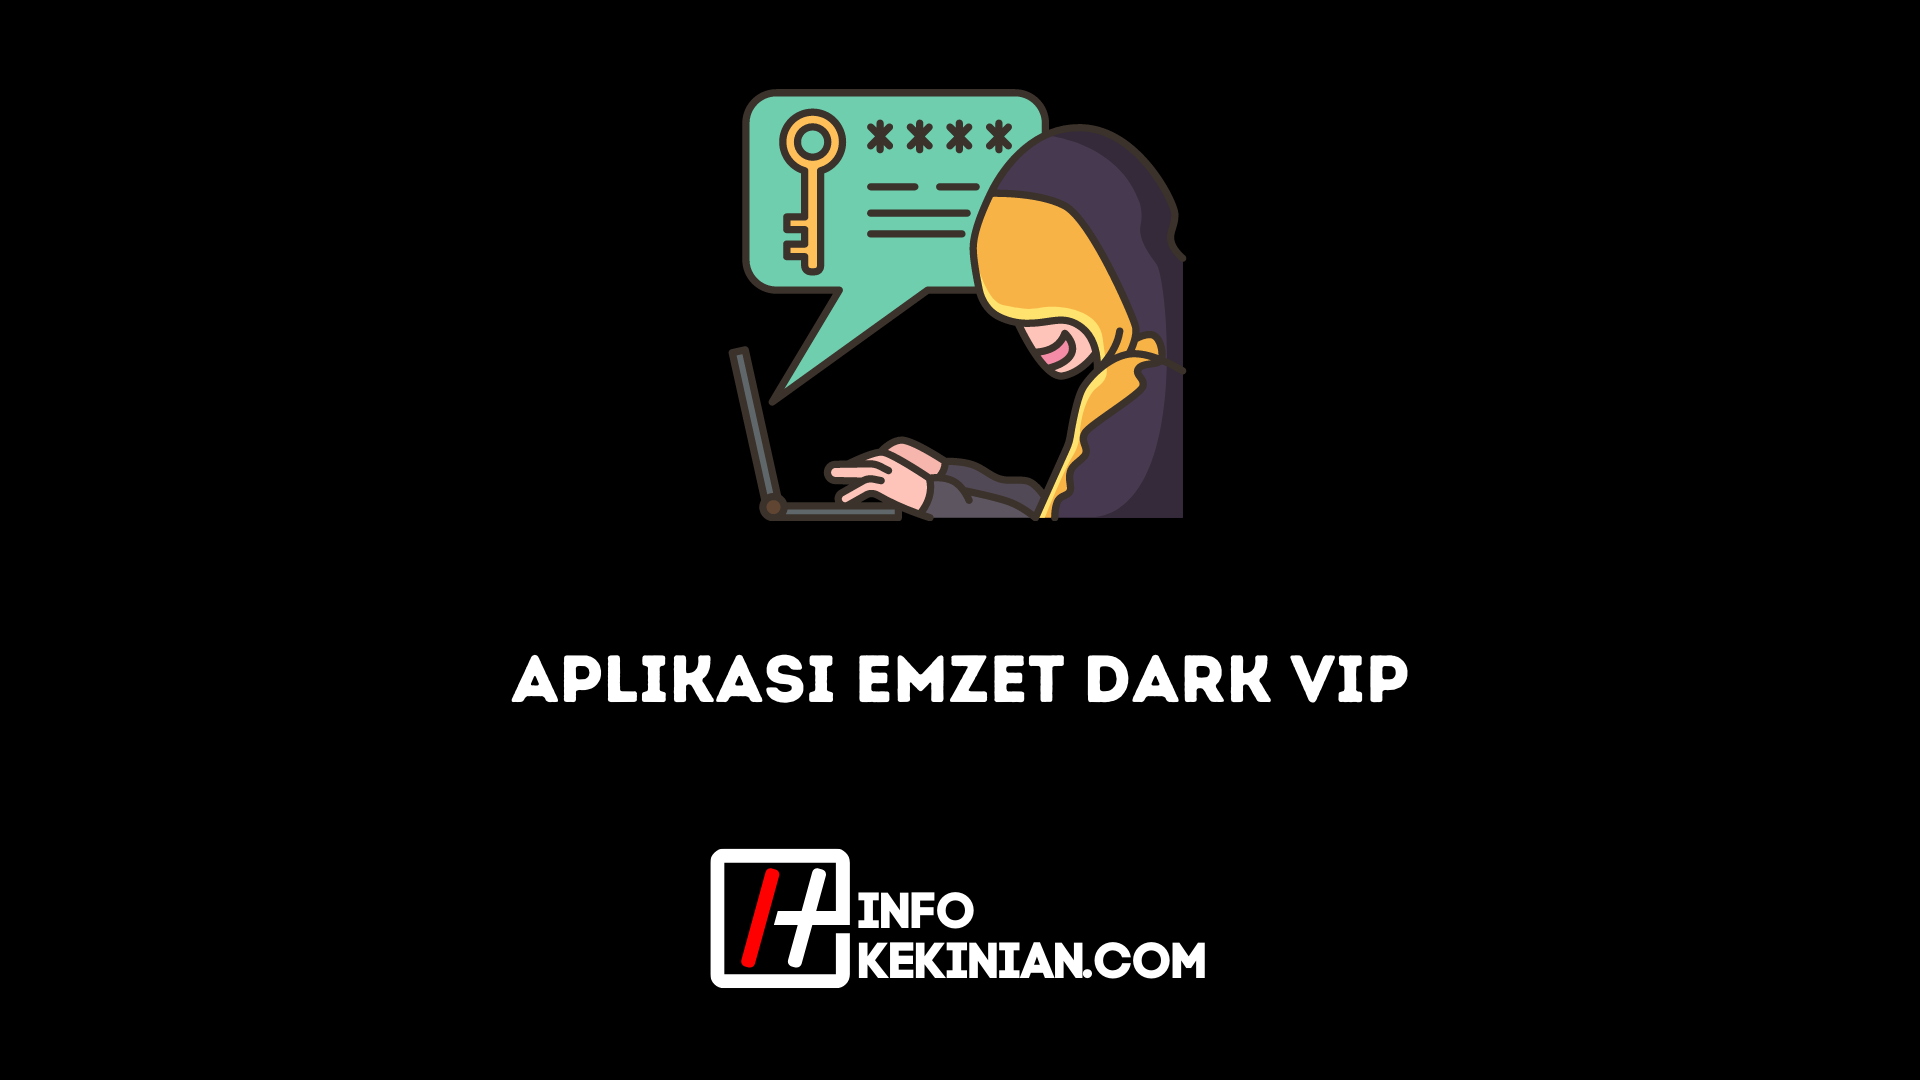 La aplicación Emzet Dark VIP